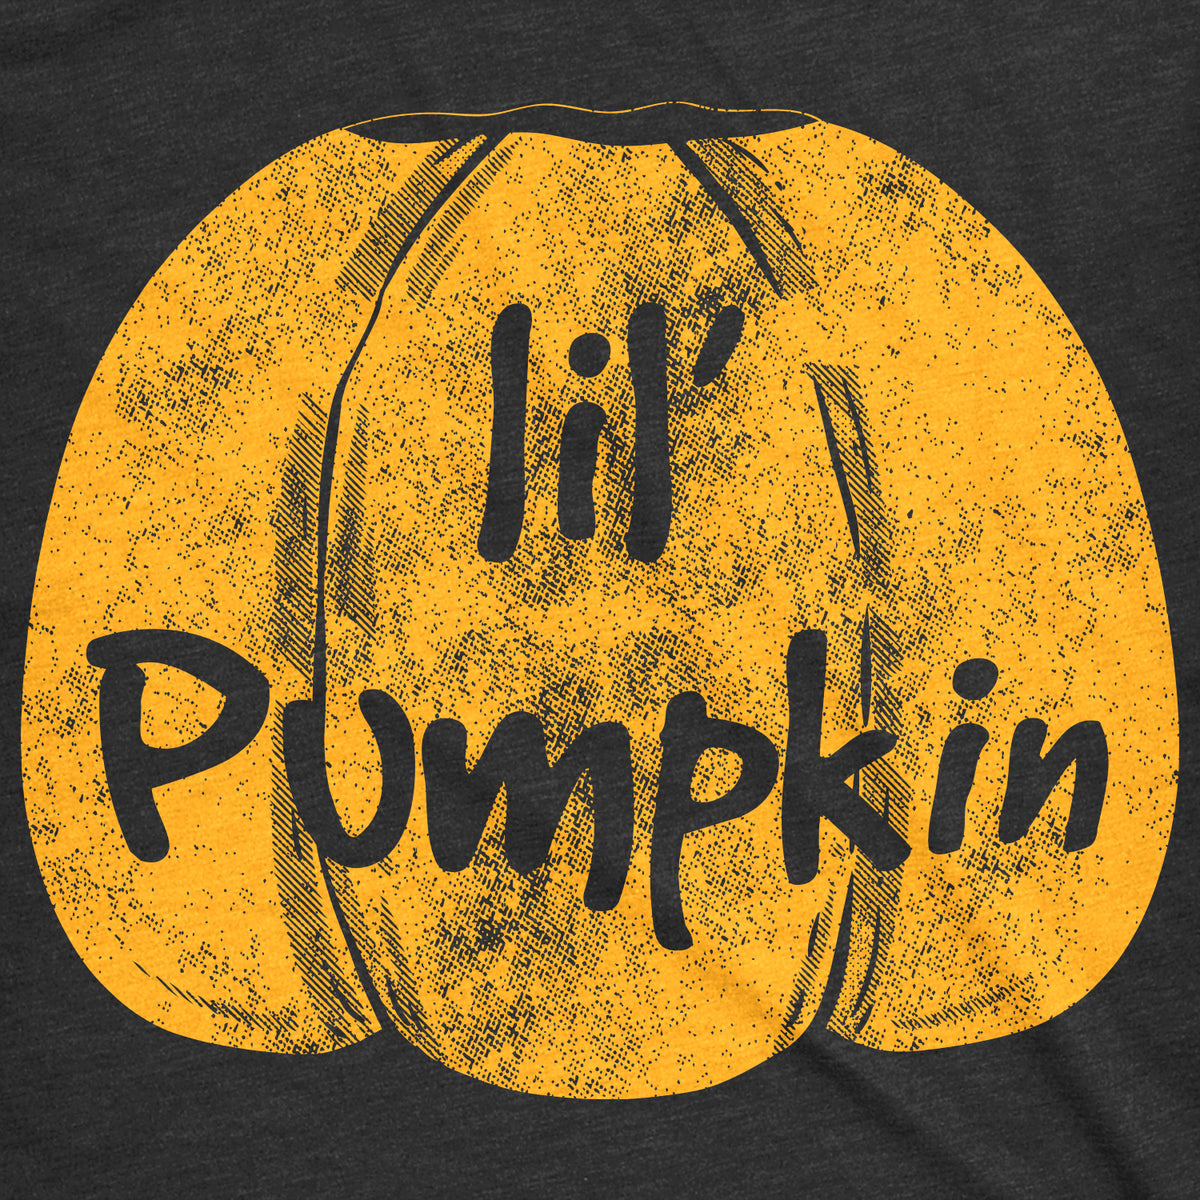 Lil Pumpkin Maternity T Shirt